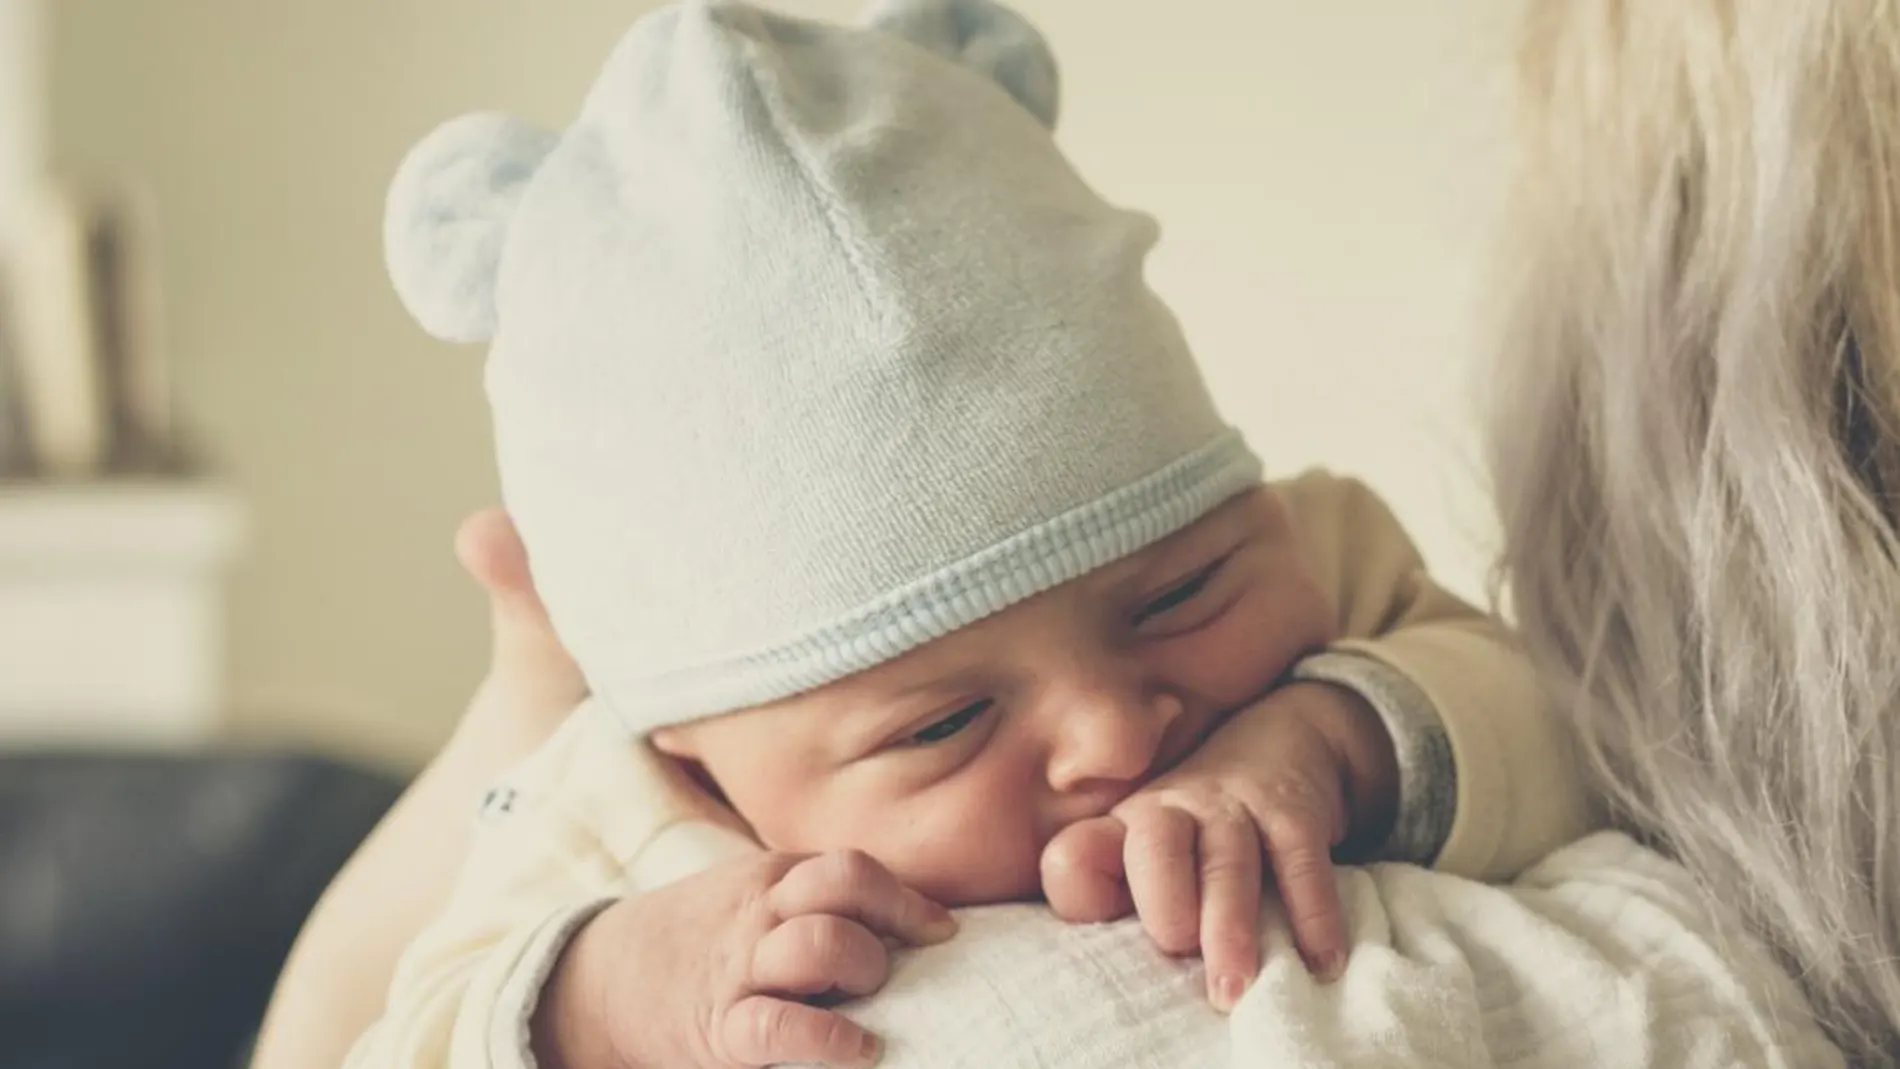 Diez cosas que todos deberíamos saber sobre los bebés